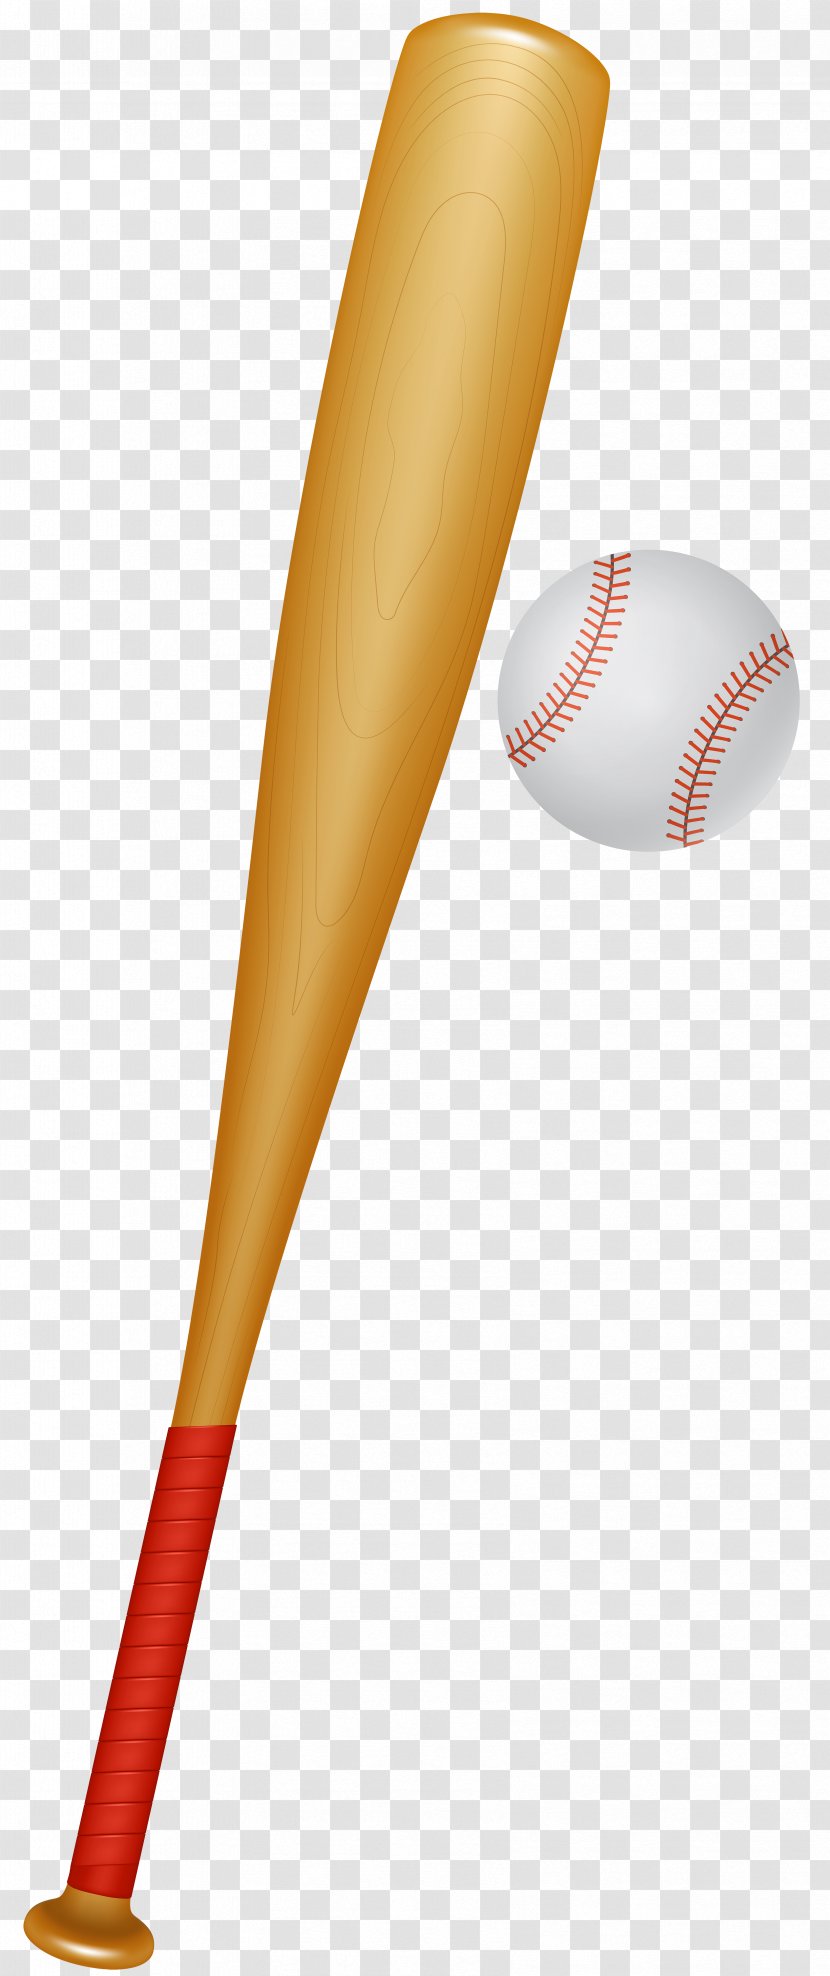 Baseball Bats Clip Art Ball Game - Equipment Transparent PNG